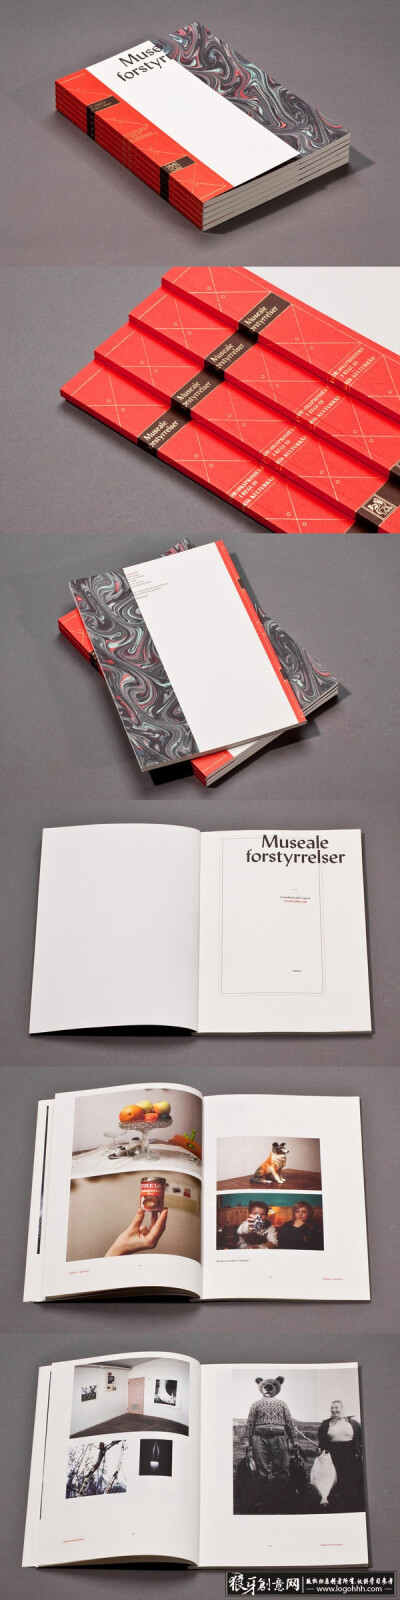 创意画册 高档画册封面设计作品欣赏,高端书籍封面设计灵感,简洁大气